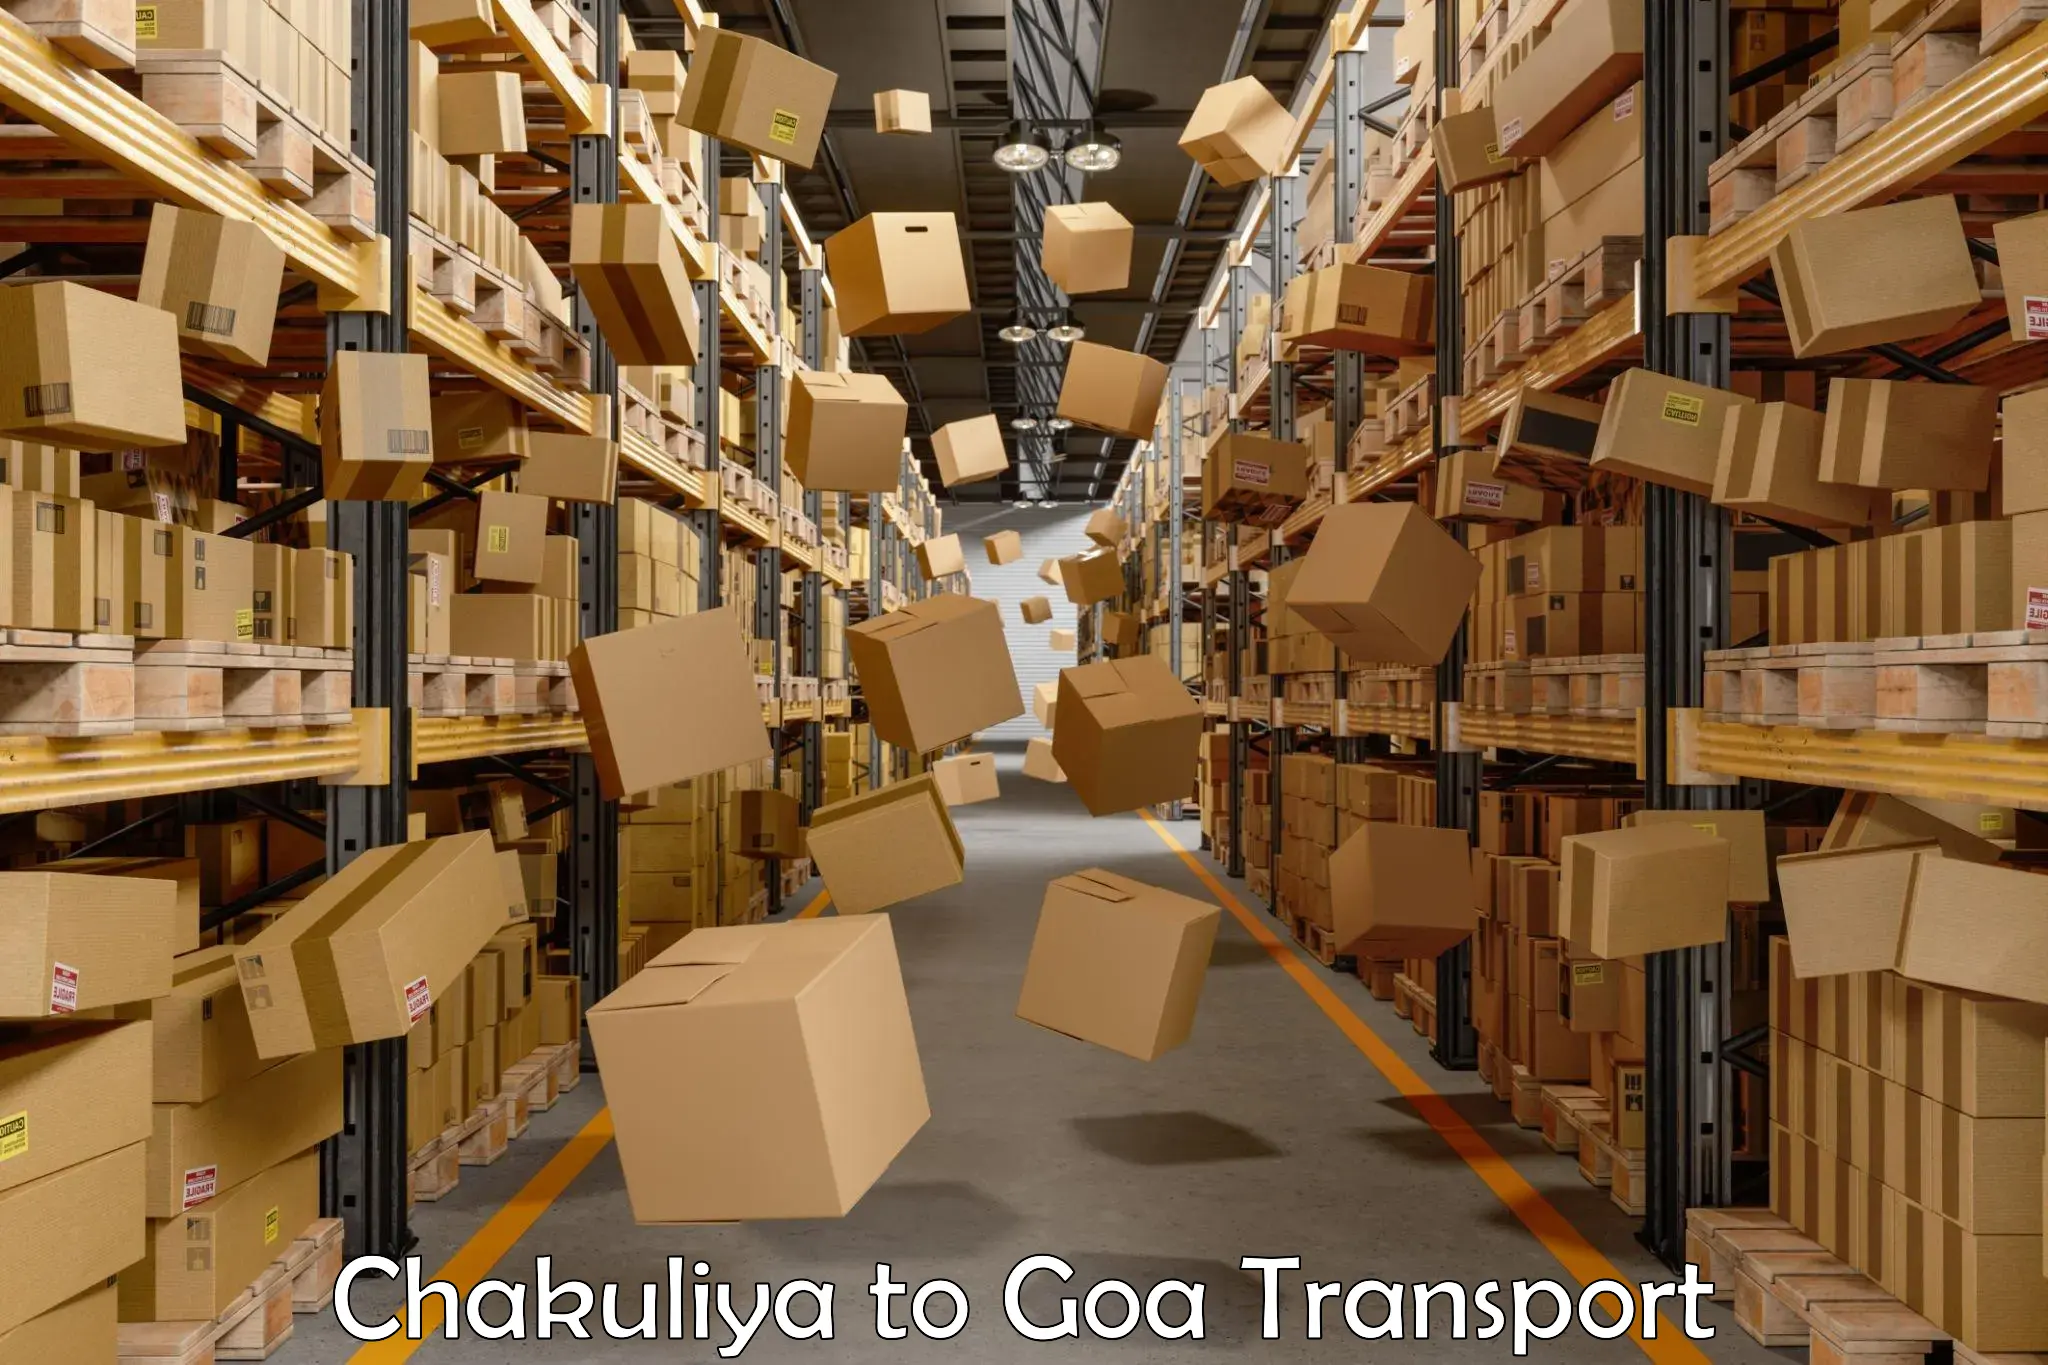 Bike transport service Chakuliya to South Goa